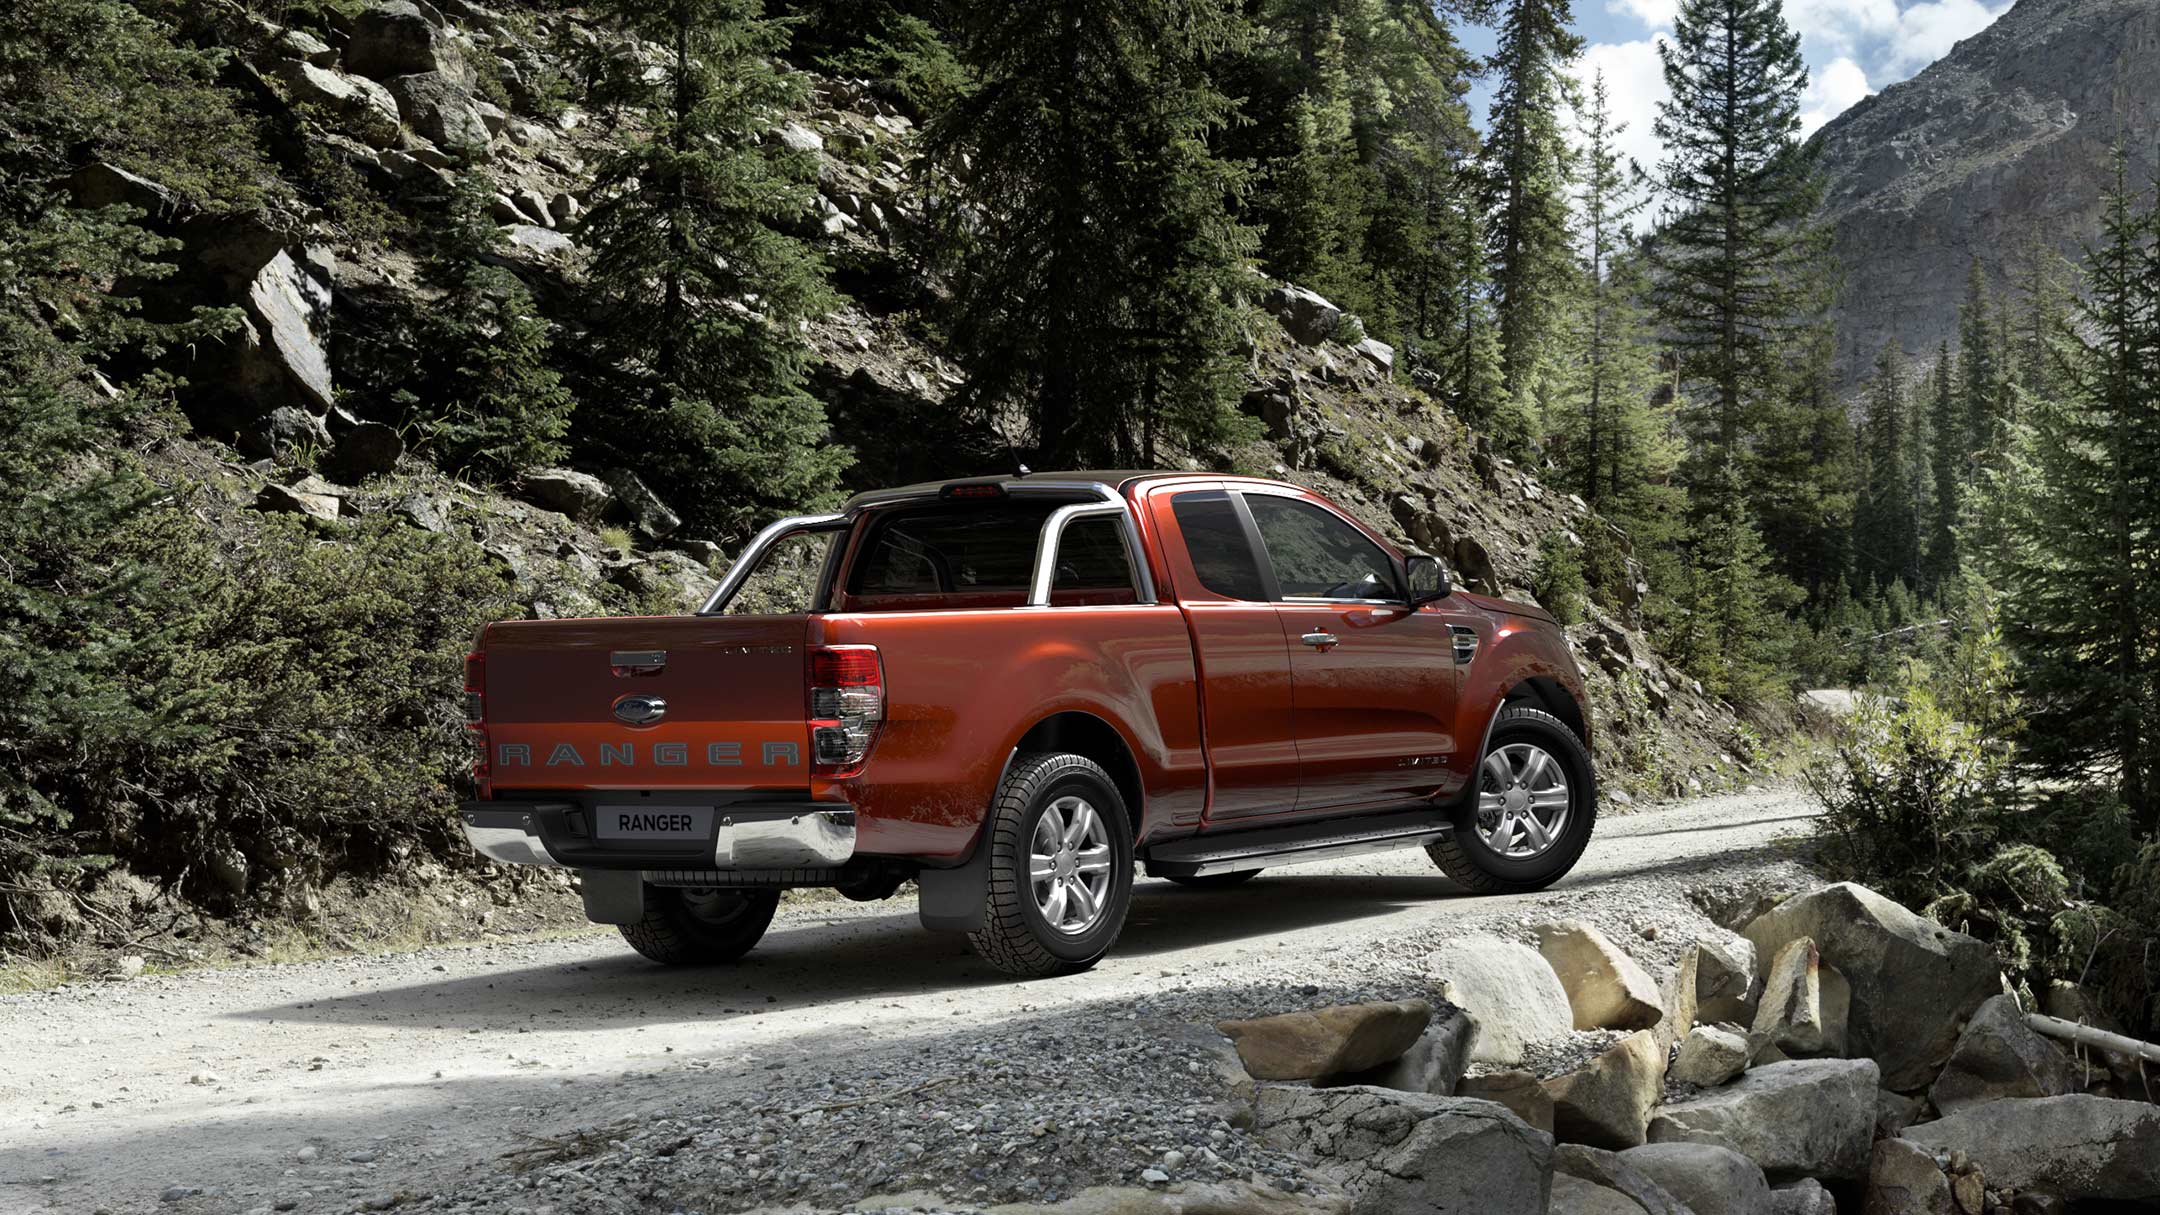 Ford Ranger Rot ¾-Heckansicht steht auf unbefestigtem Weg im Gebirge